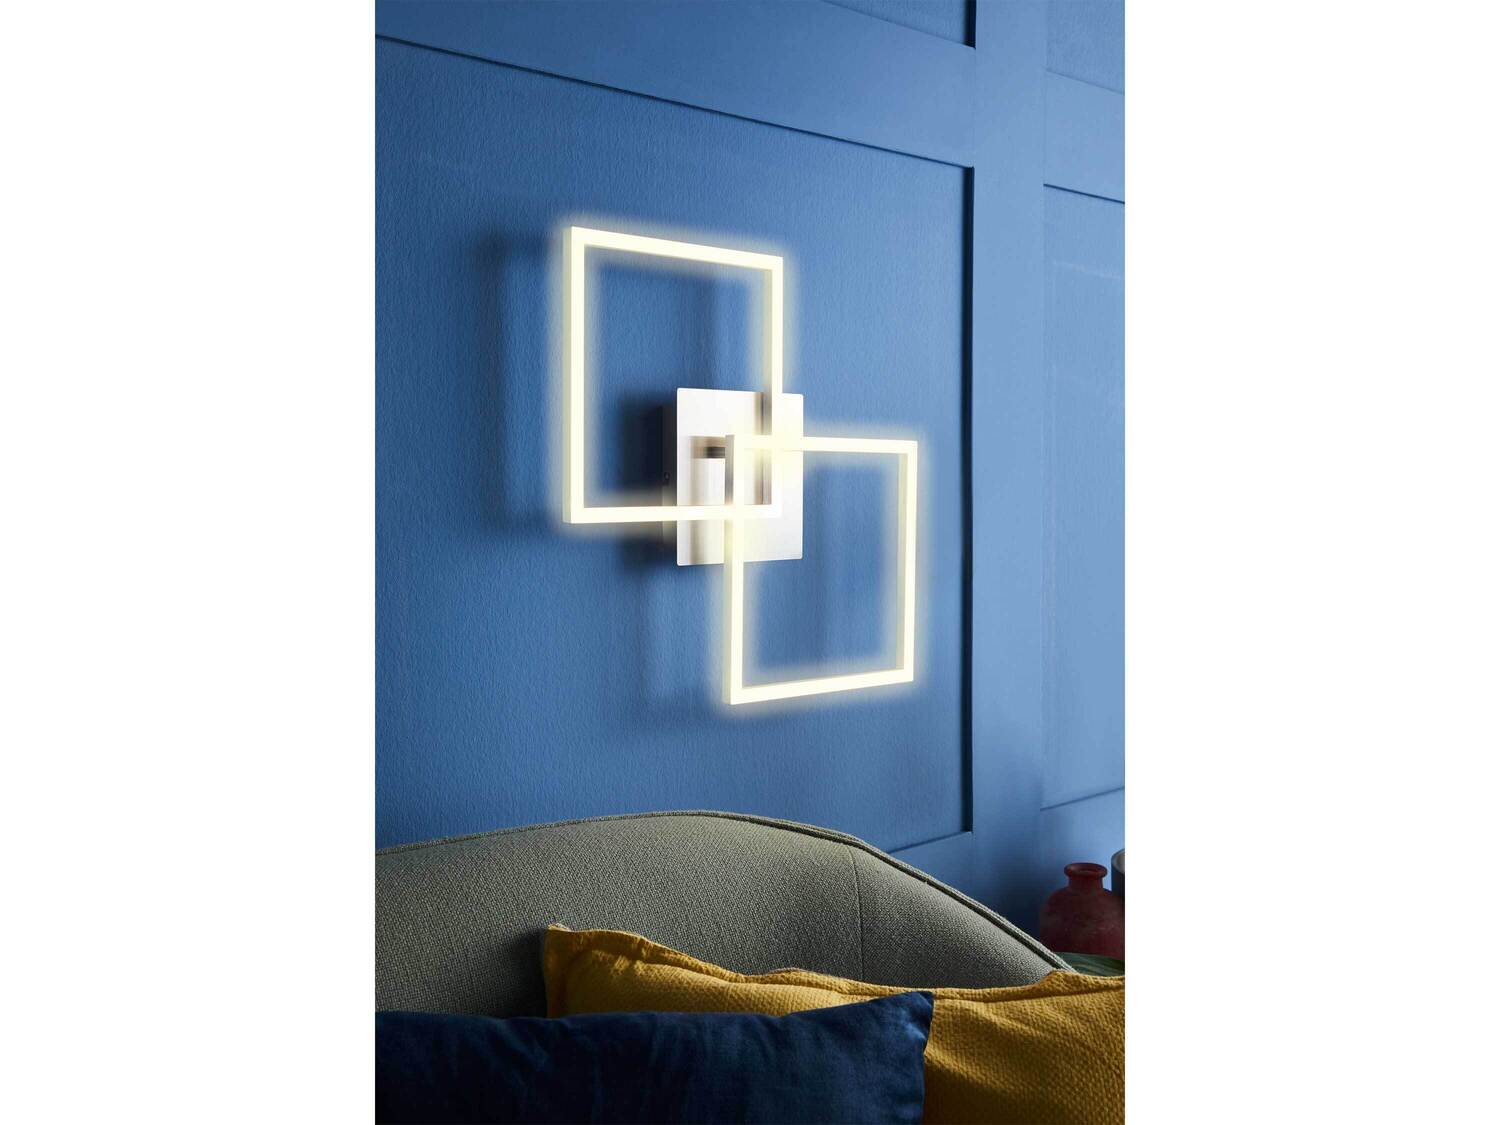 Lampa LED Livarno, cena 129,00 PLN 
- do montażu na ścianie lub sufcie
- barwa ...